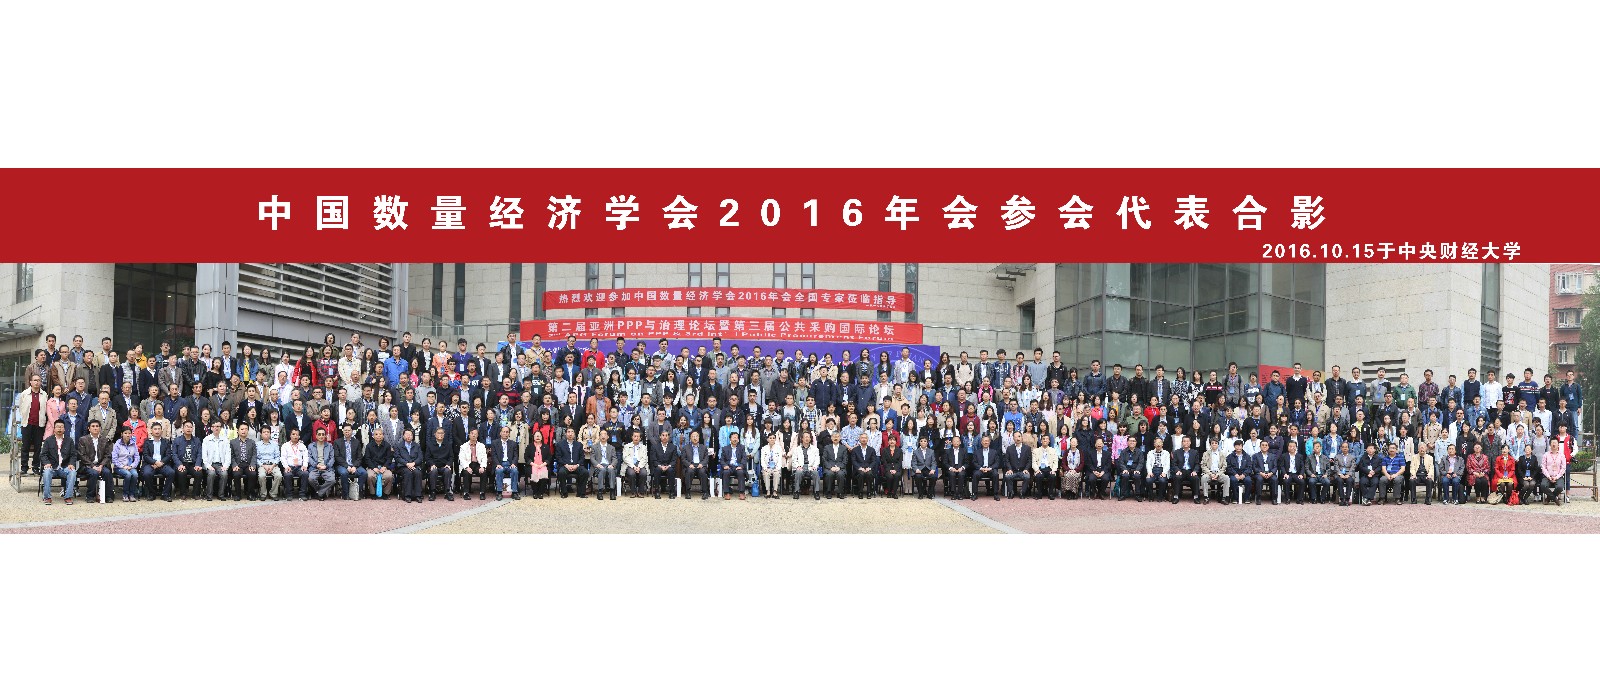 2016年中国数量经济学会年会